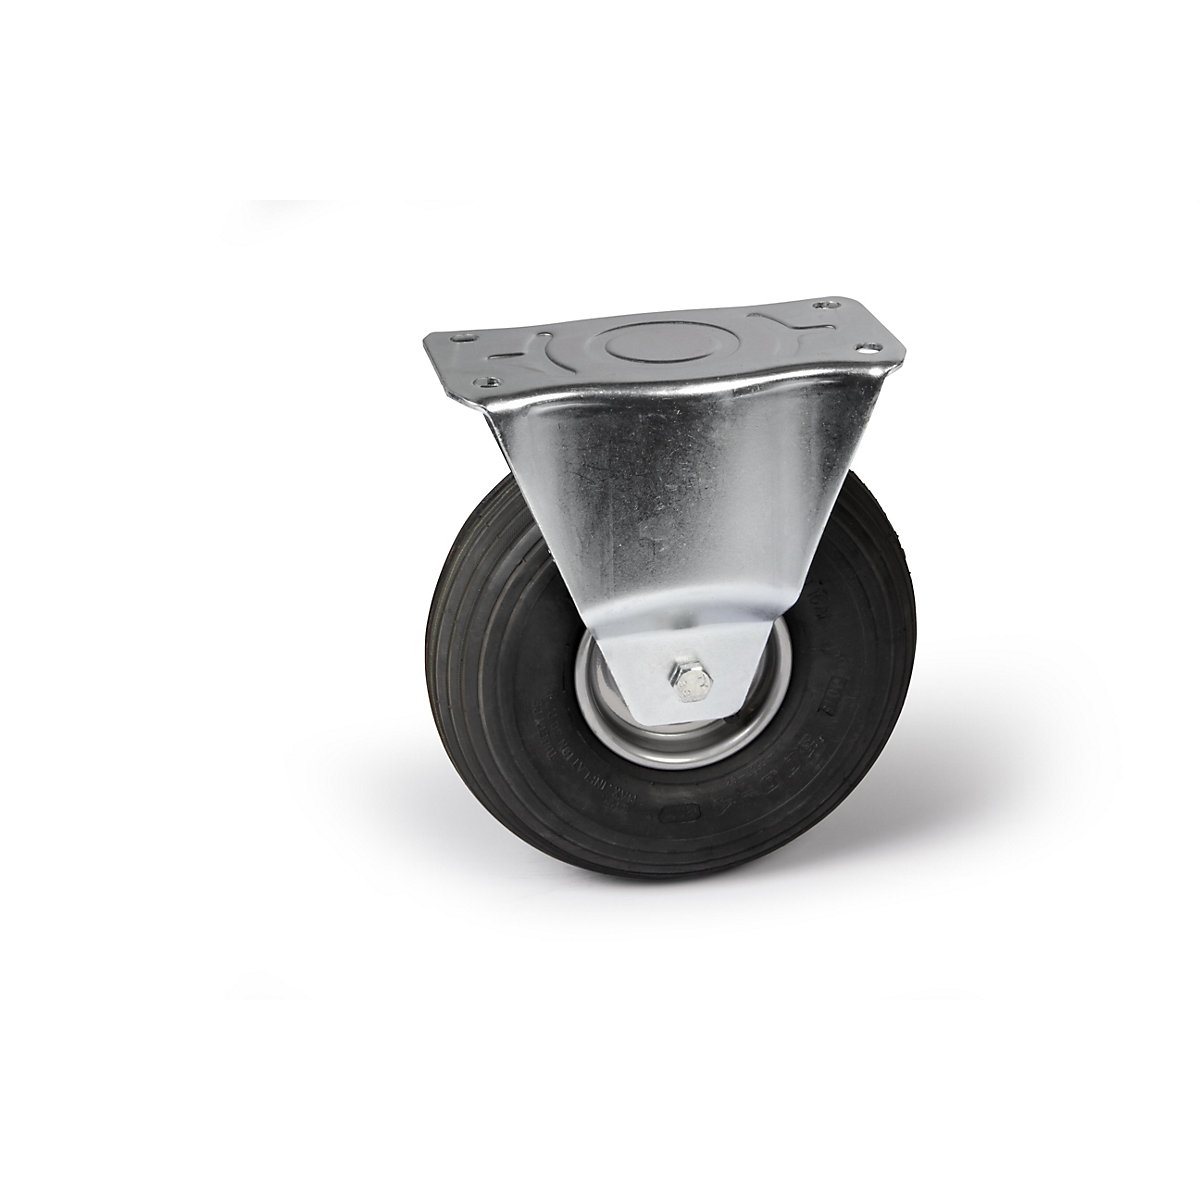 Pneumatika na disku z oceľového plechu, Ø x šírka kolesa 260 x 85 mm, profil pneumatiky drážka, pevné koliesko, s valčekovým ložiskom-4